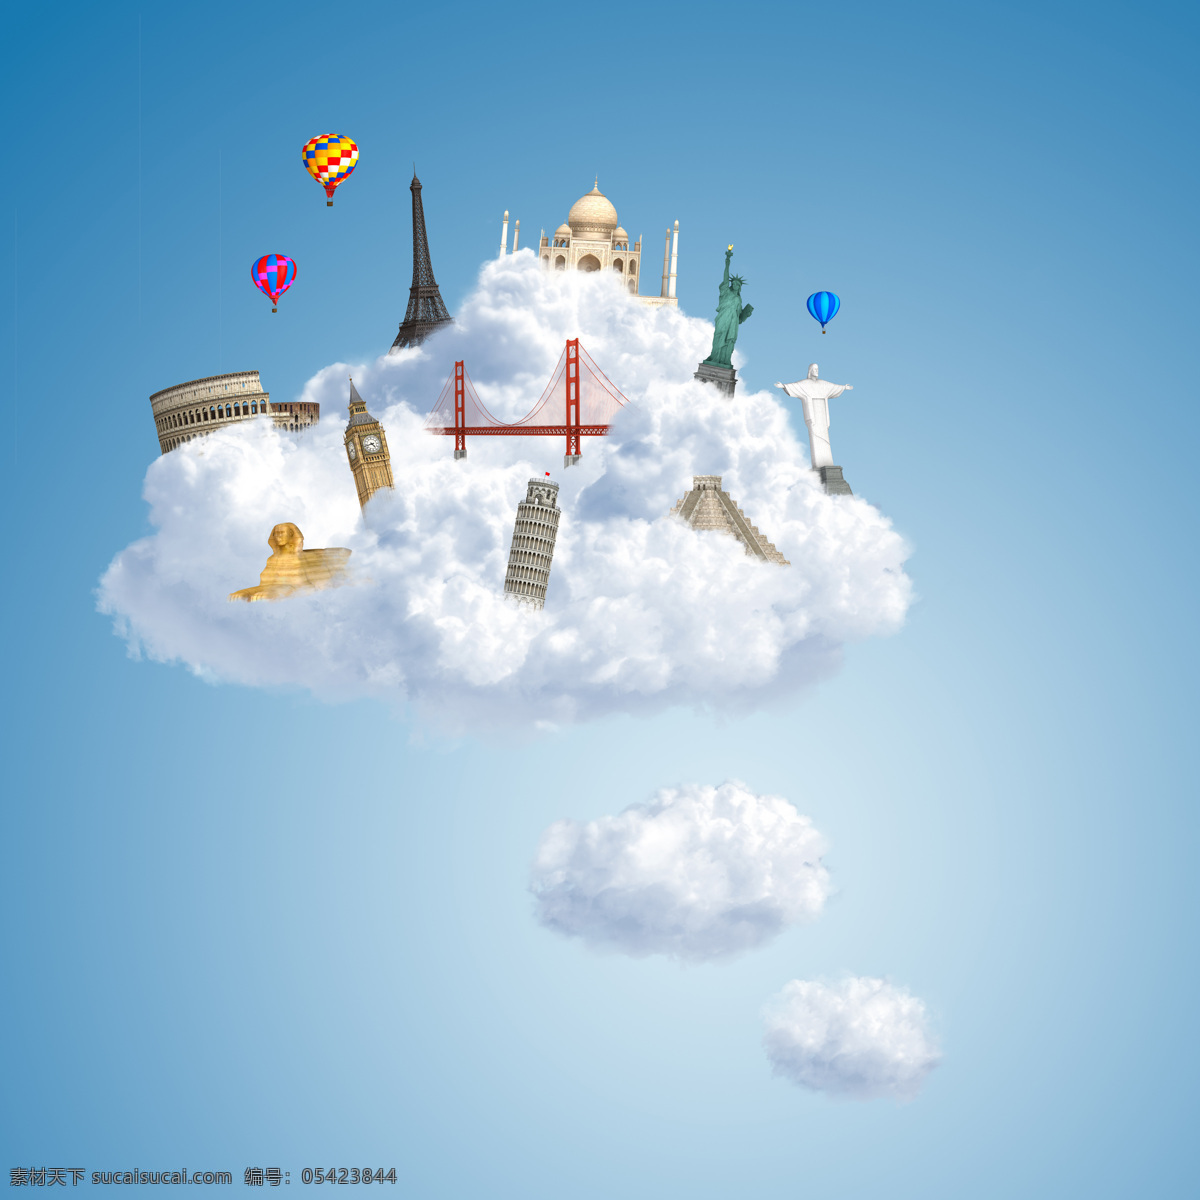 云朵 中 旅游景区 罗马 埃菲尔铁塔 自由女神像 热气球 建筑设计 环境家居 蓝色